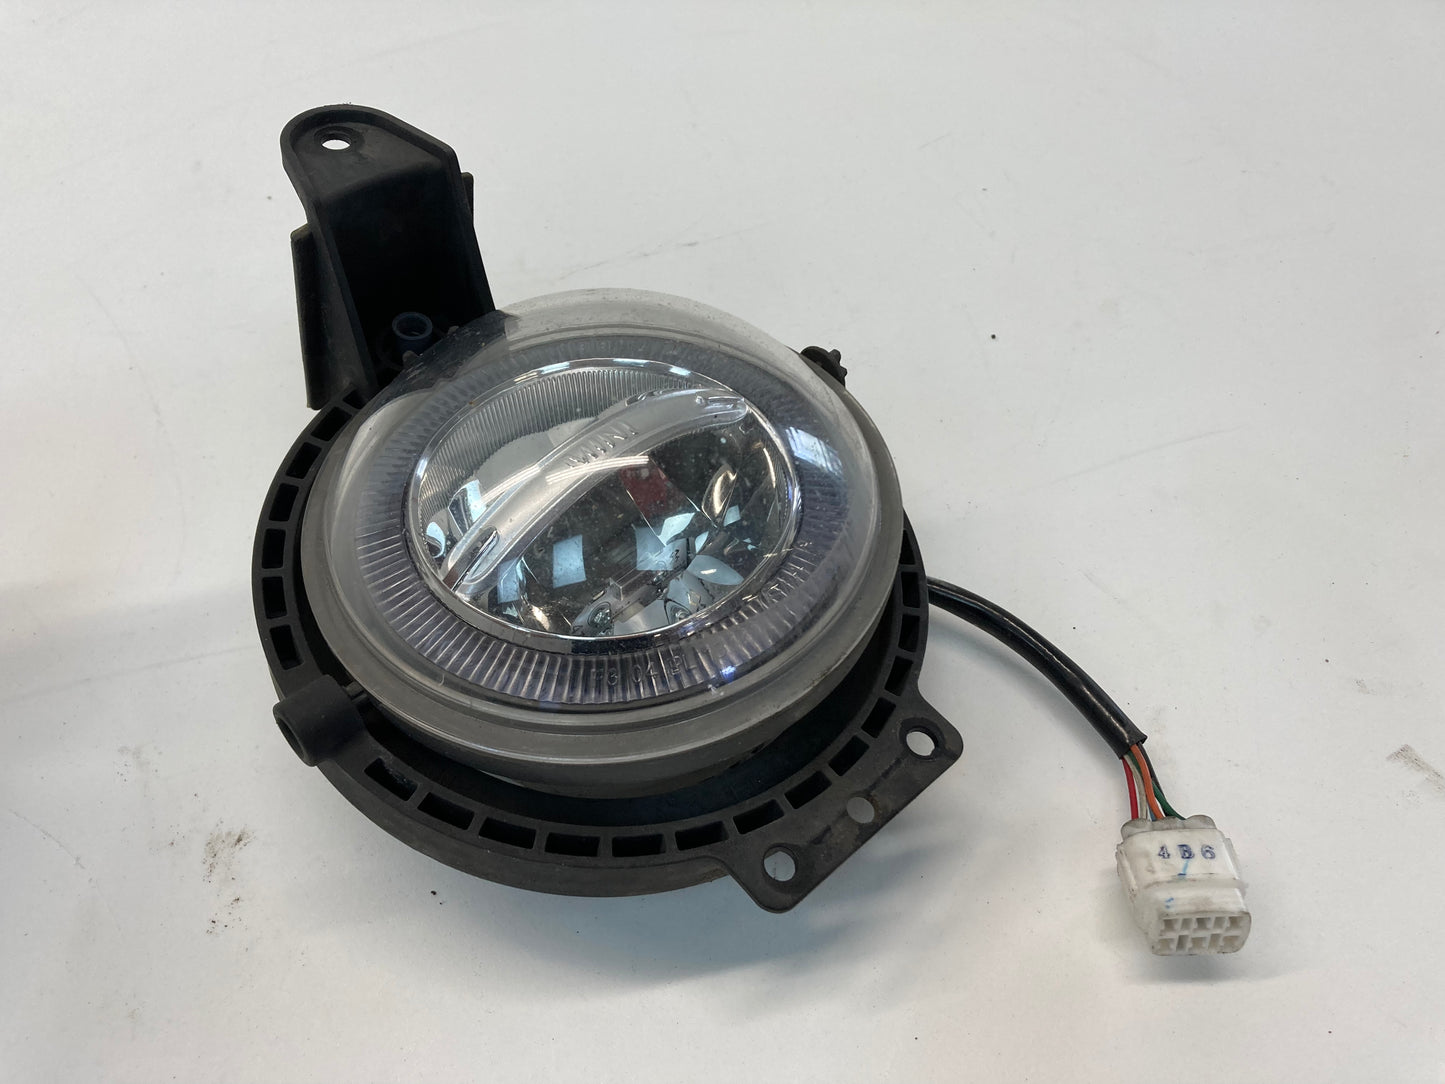 Mini Cooper TFL LED Driving Light Lamp 63122348832 07-16 R5x R6x 387